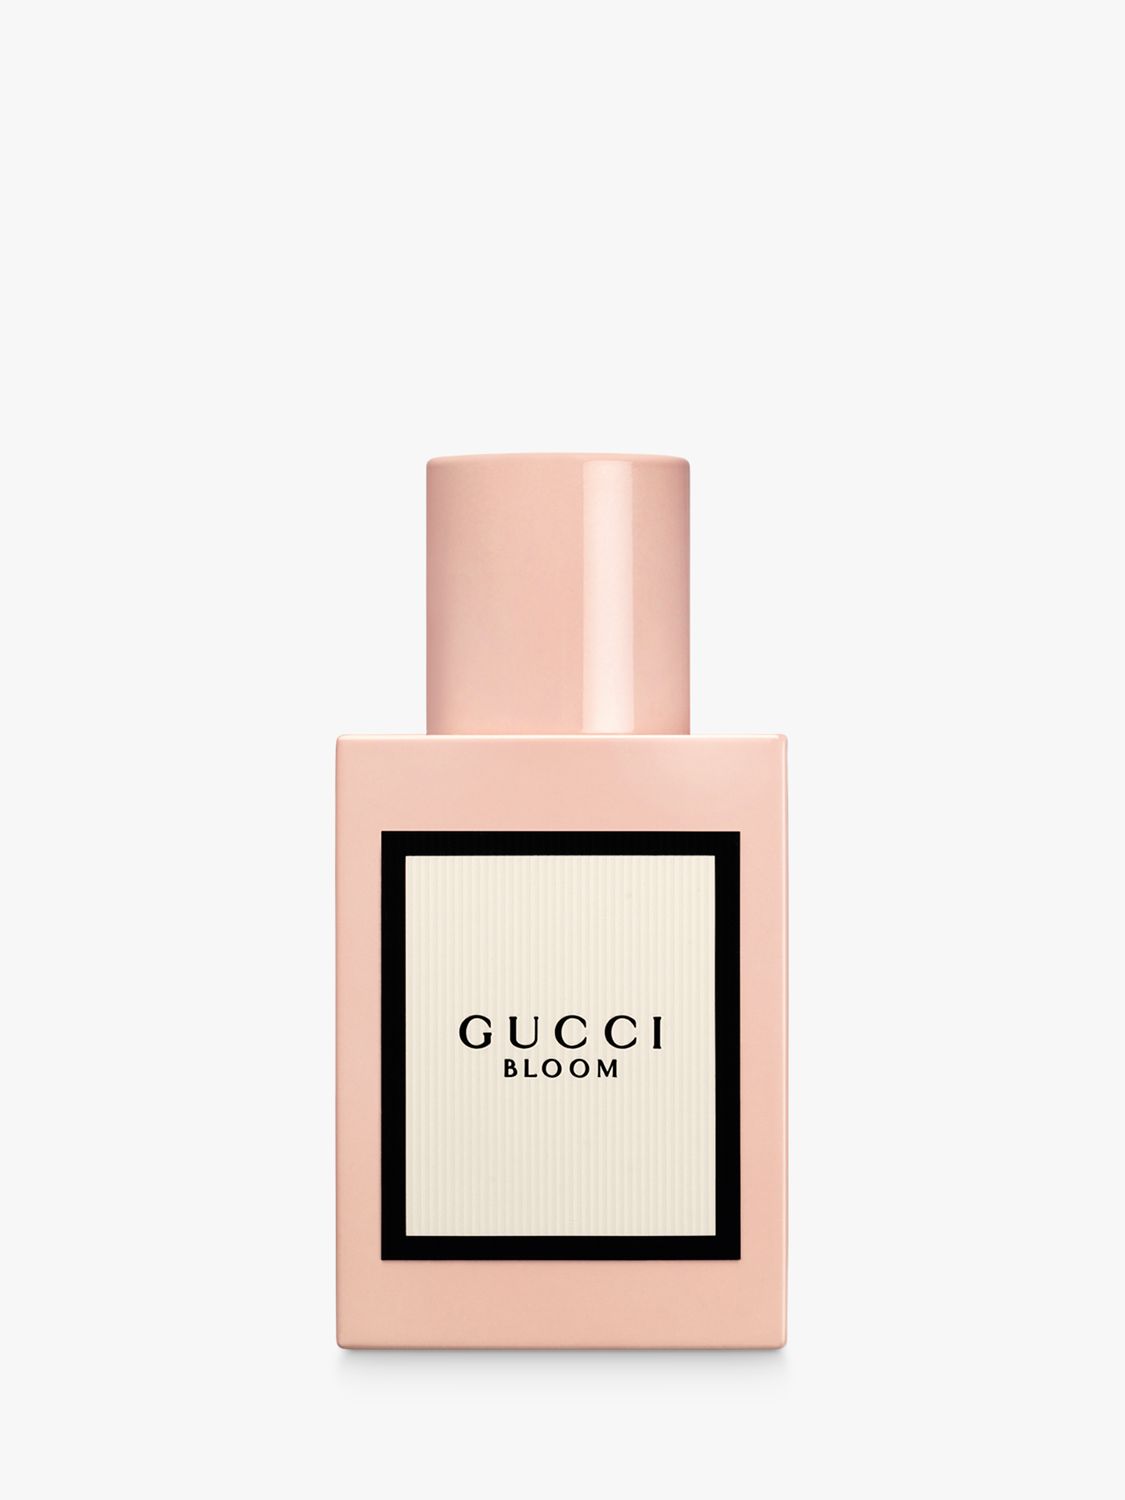 Gucci Bloom Eau de Parfum at John Lewis 